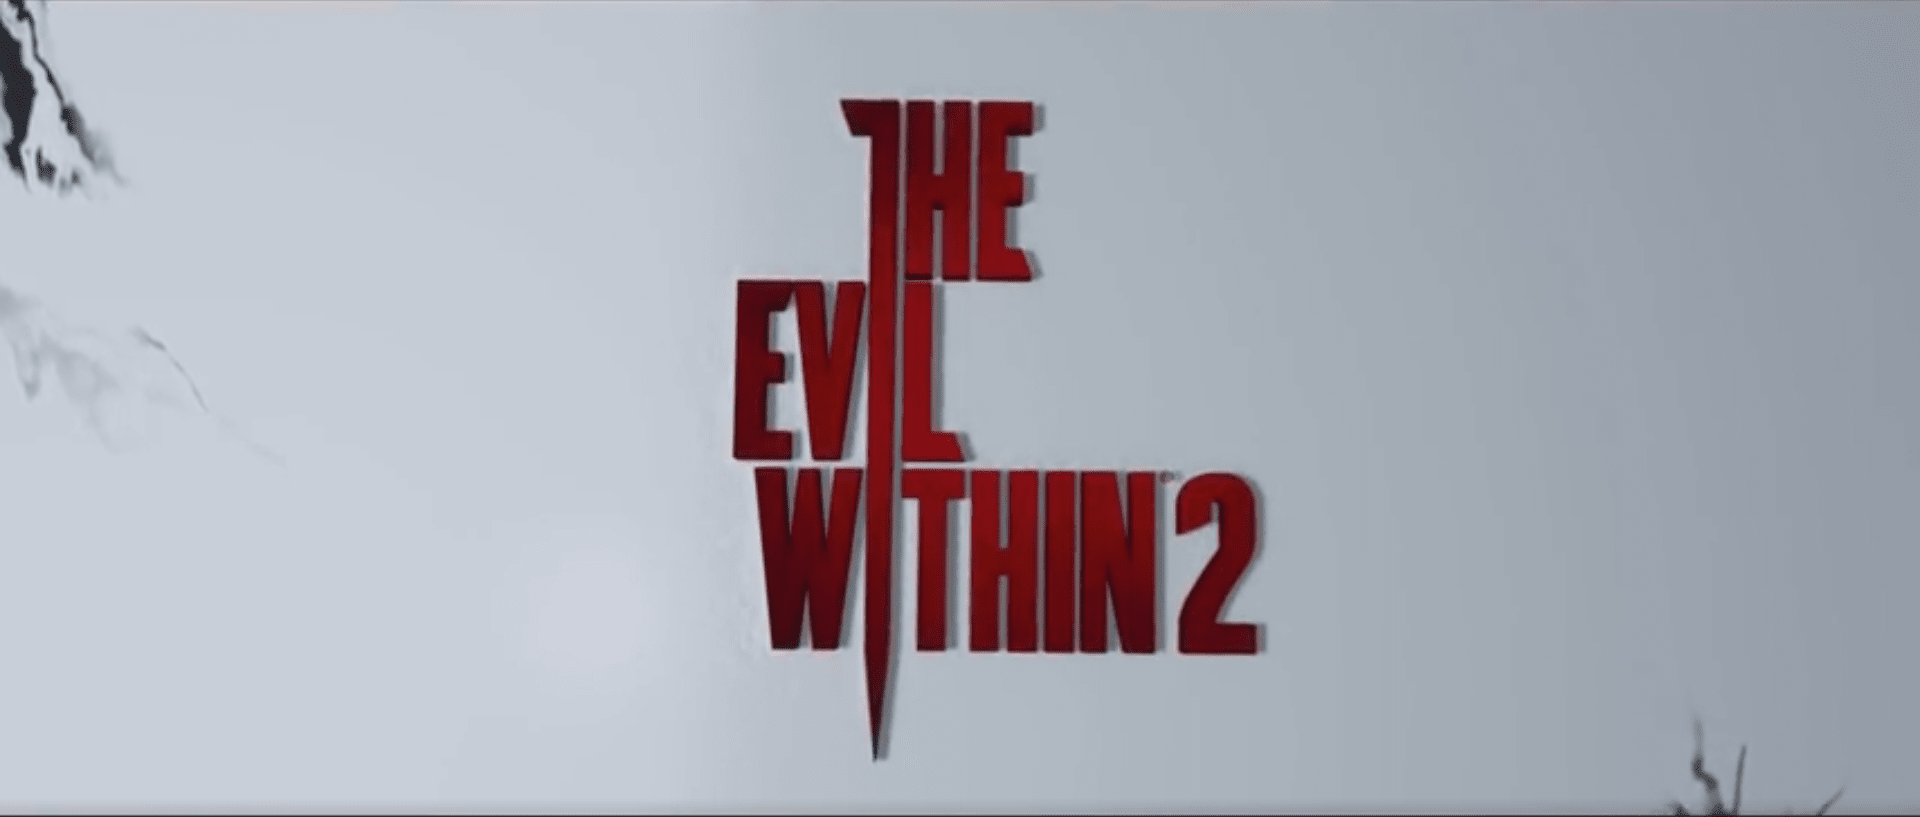 معرفی بازی Evil within 2